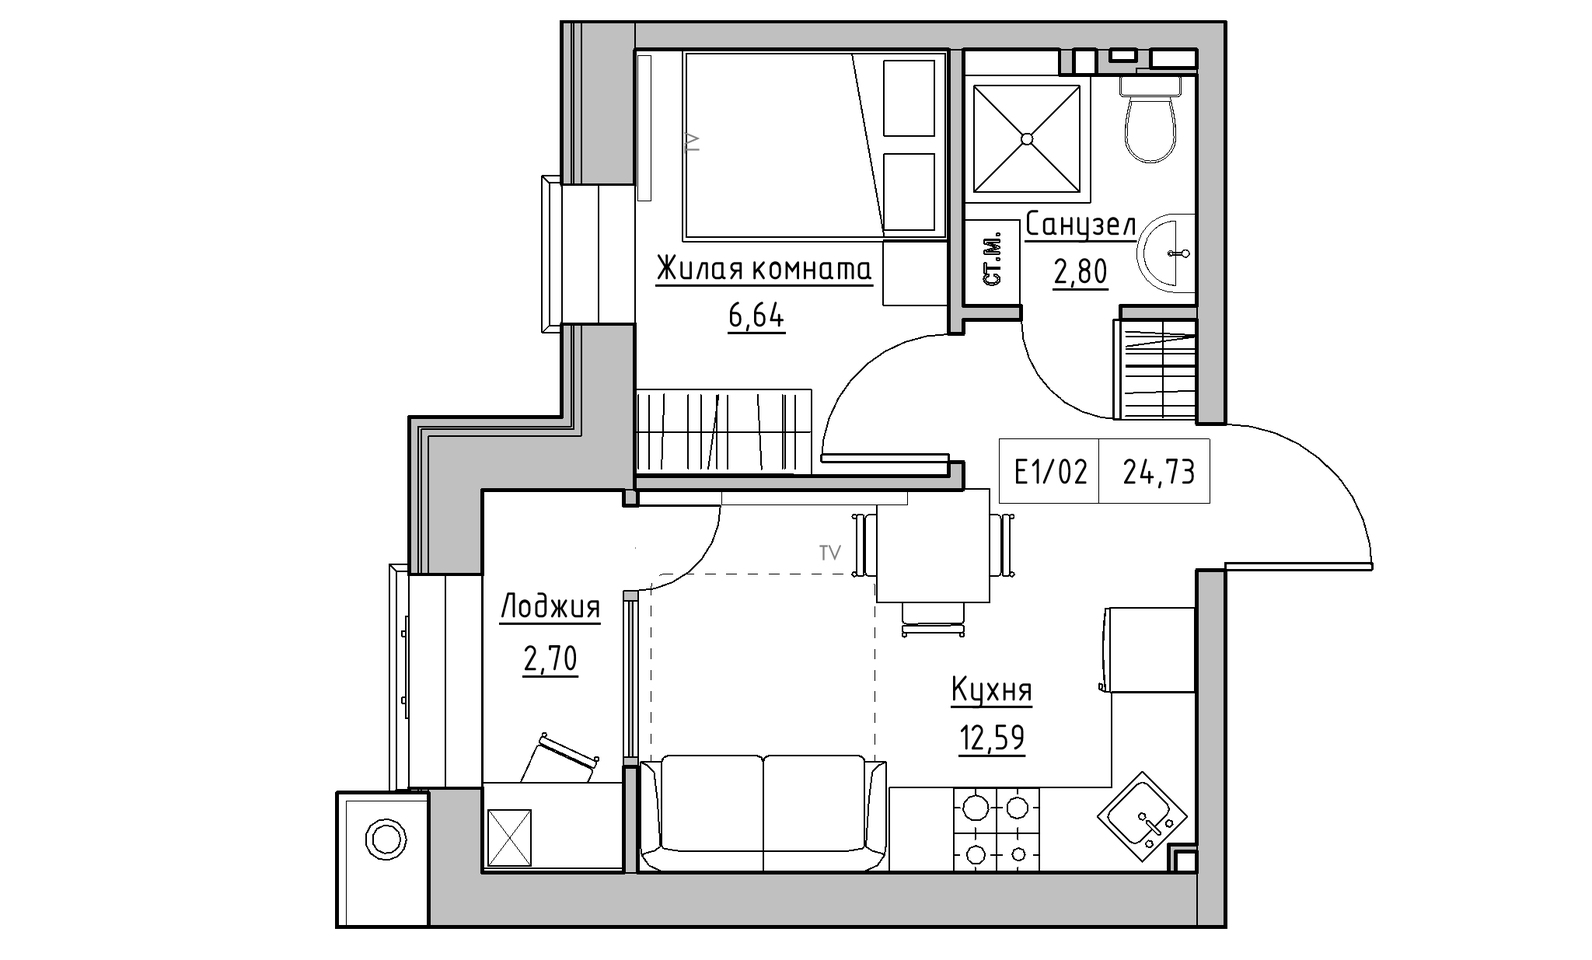 Планування 1-к квартира площею 24.73м2, KS-014-03/0013.